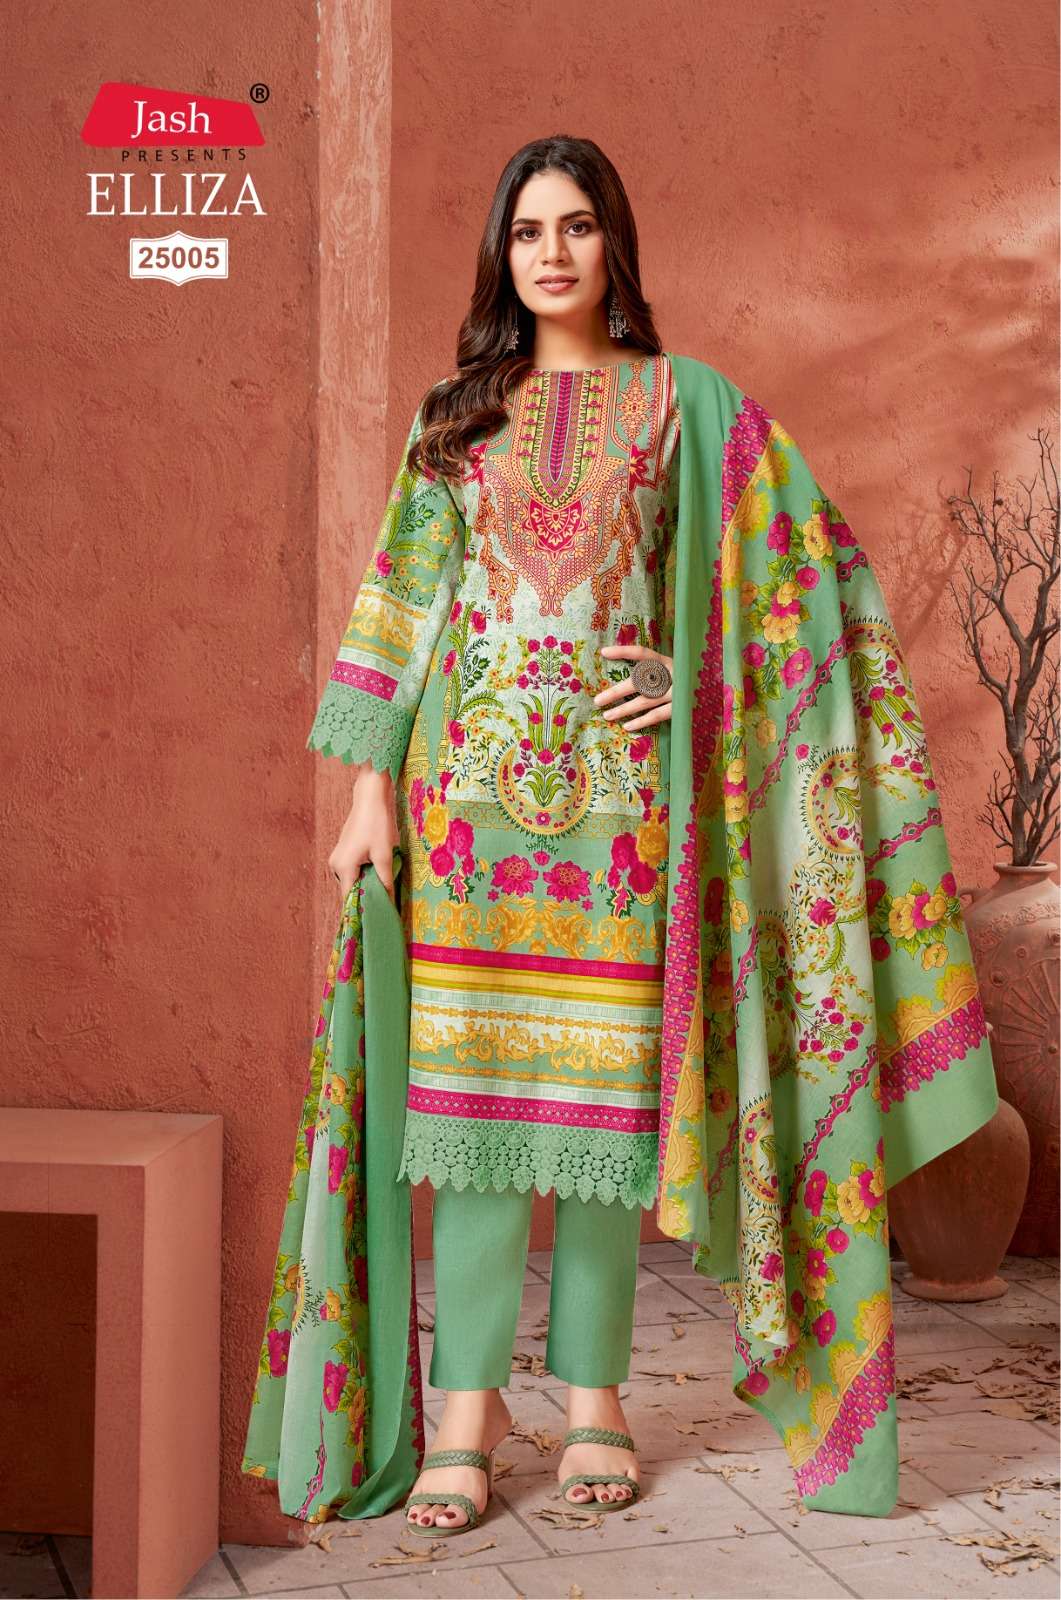 Jash Elliza Vol 25 Cotton Dress Material Wholesale catalog